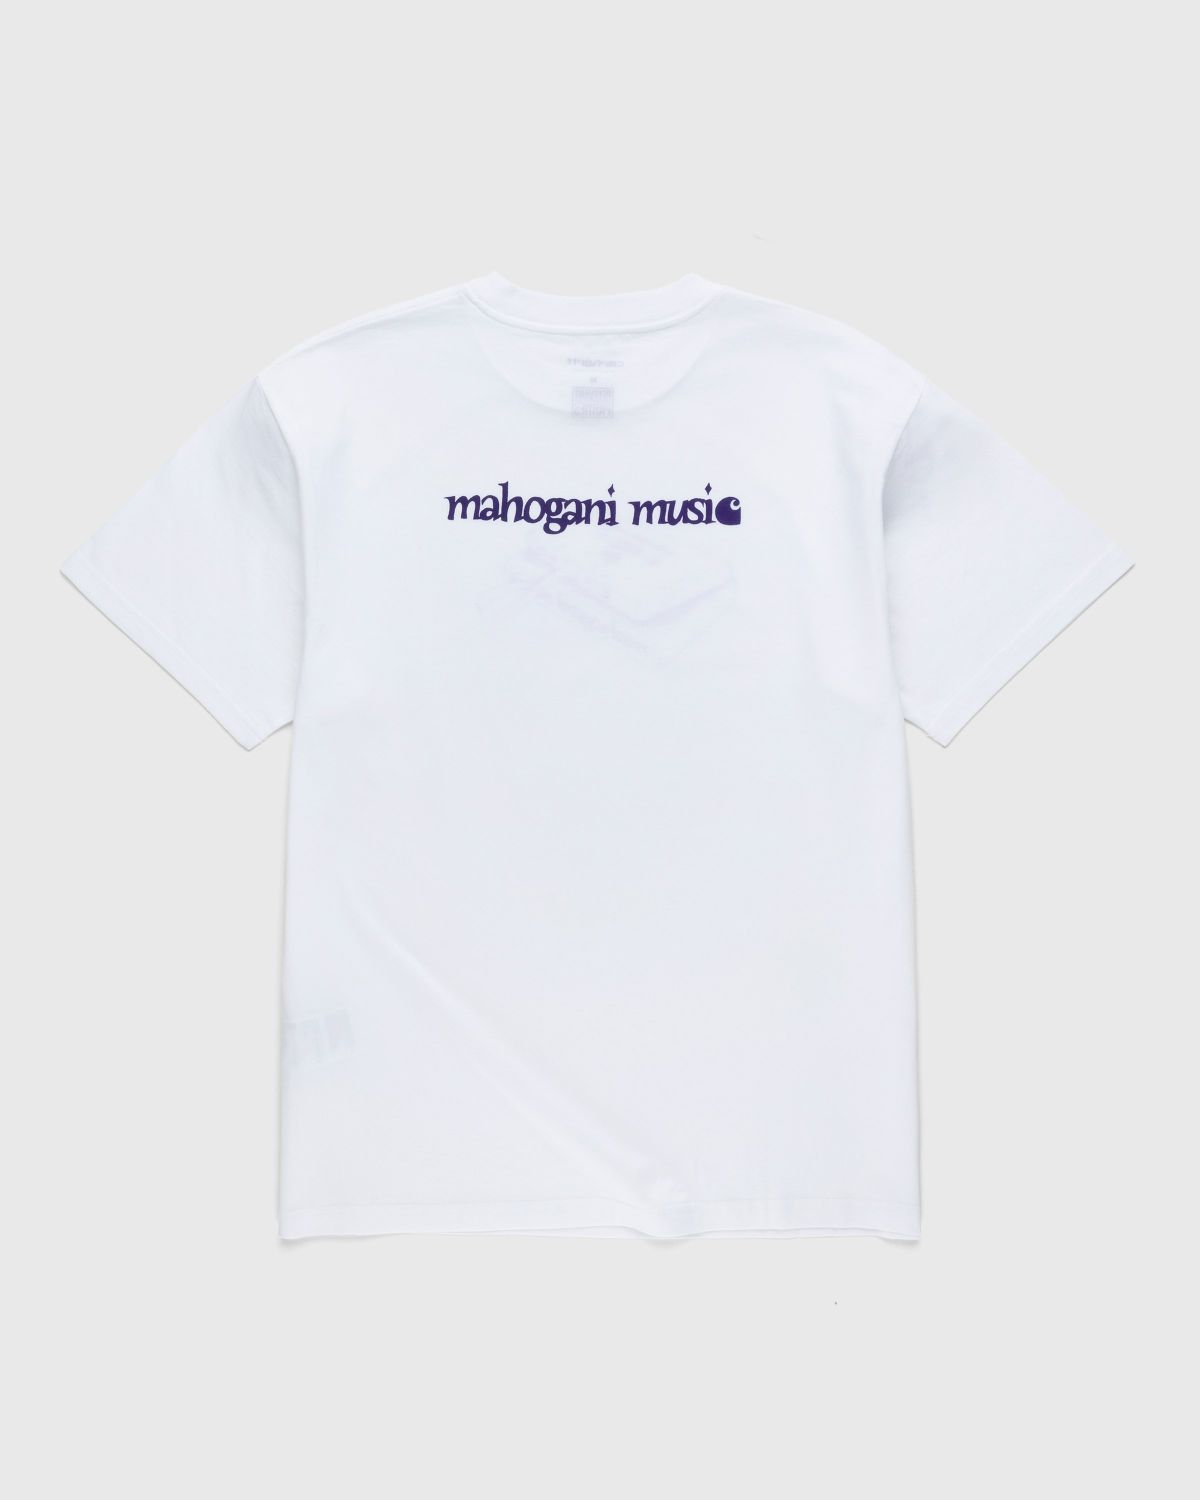 Carhartt WIP – Mahogani Music T-Shirt White/Purple - Tops - White - Image 2